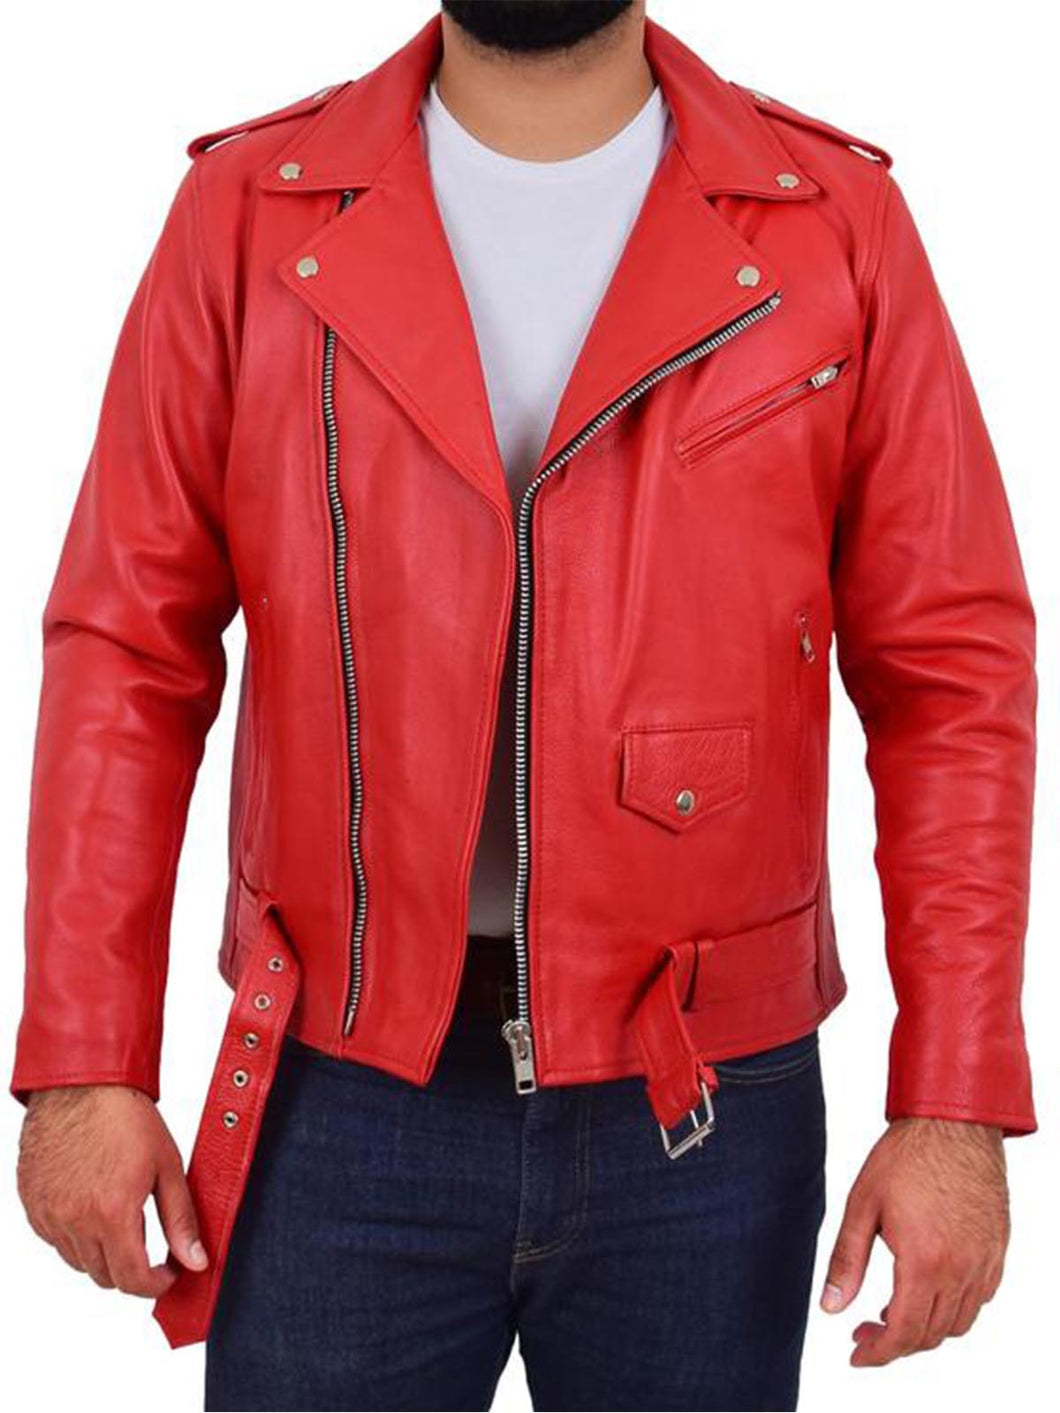 Mens Heavy Duty Red Leather Biker Jacket